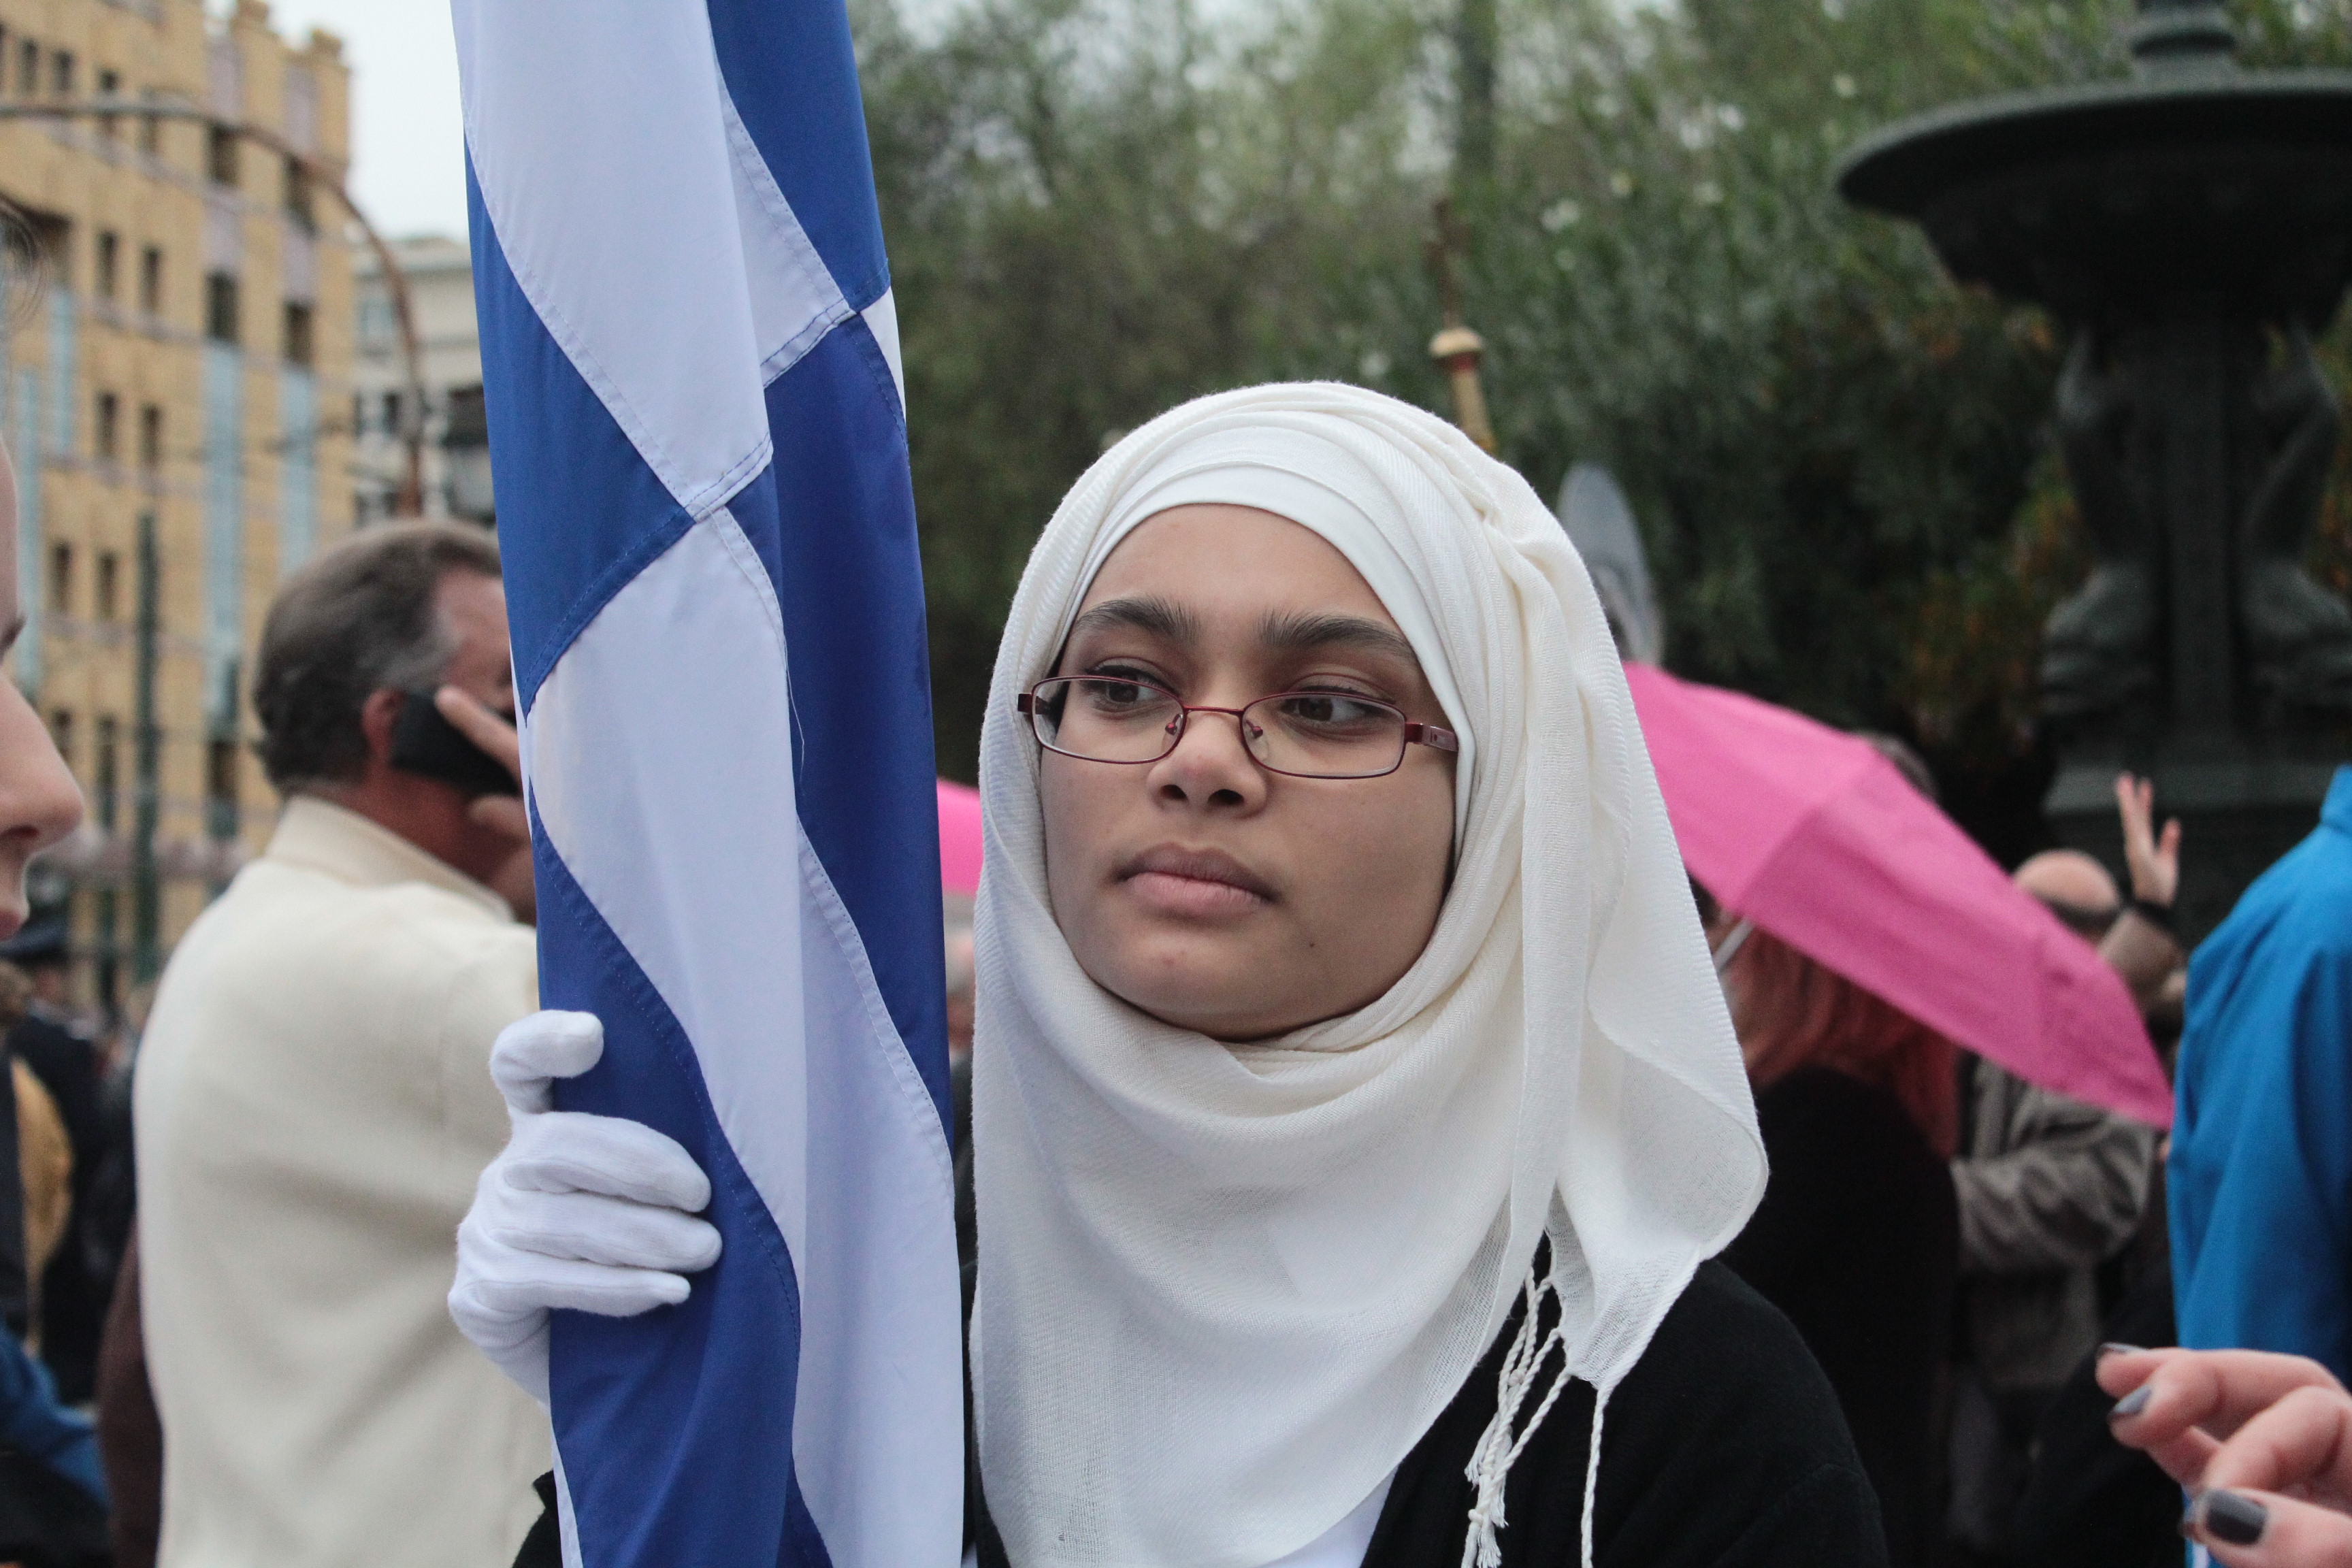 Βίντεο: Ξεχώρισε η σημαιοφόρος με τη μαντίλα στην Αθήνα - Φίλης: Ελλοχεύει καθημερινά ο φασισμός